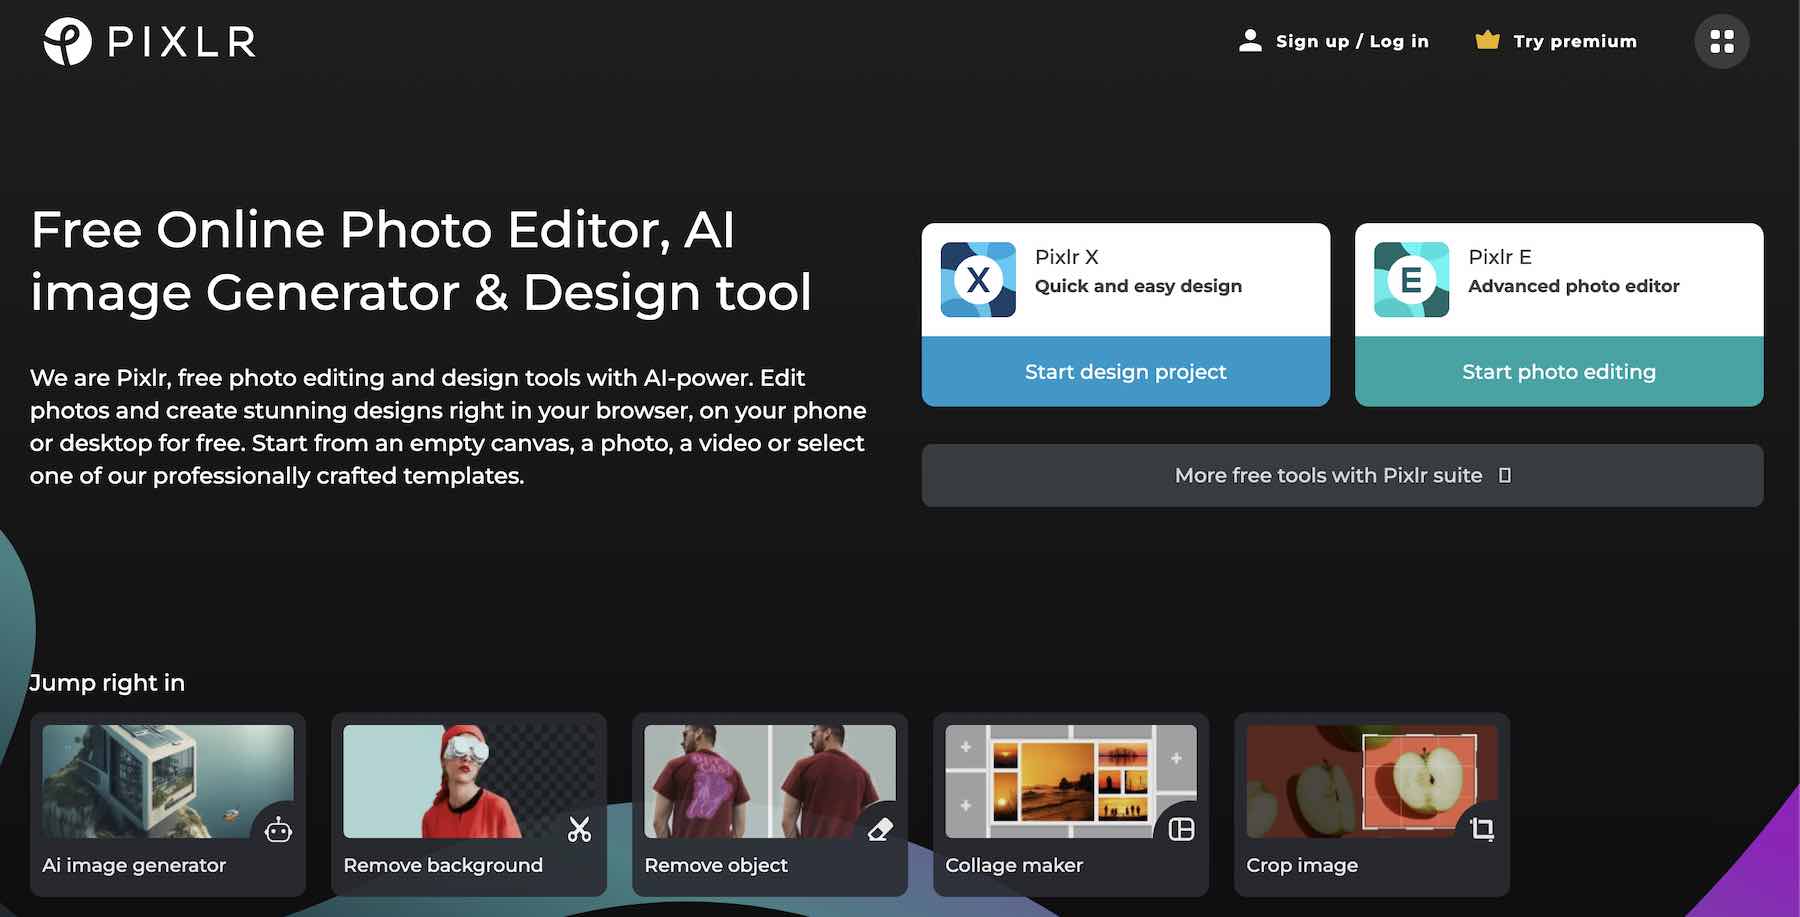 Startseite des Pixlr-Editors mit allen Funktionen